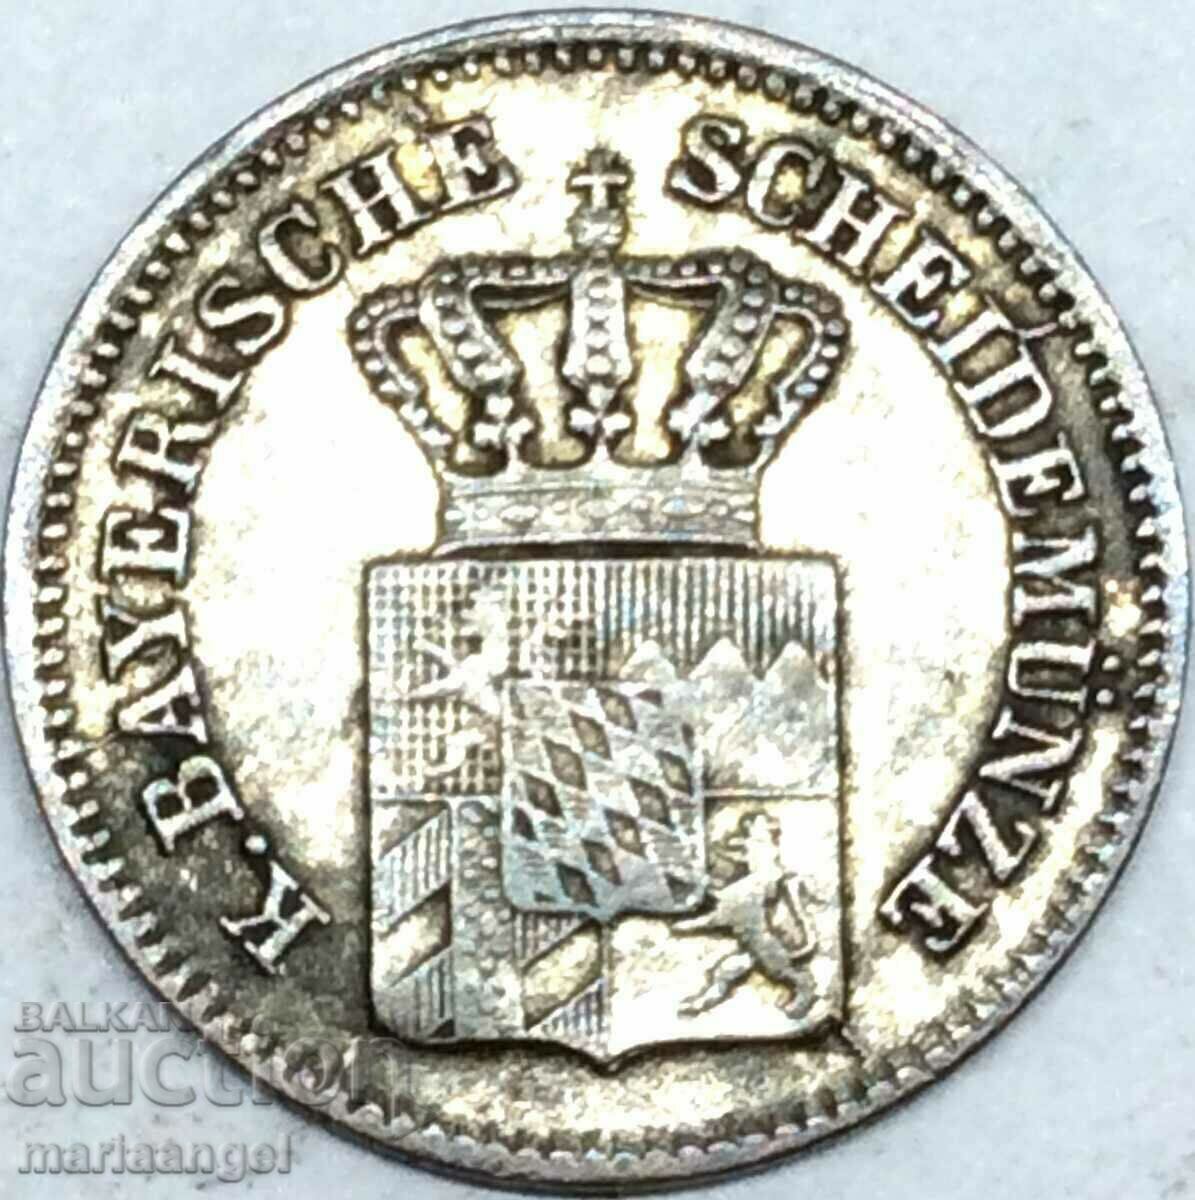 1 Kreuzer 1859 Bavaria Germany silver